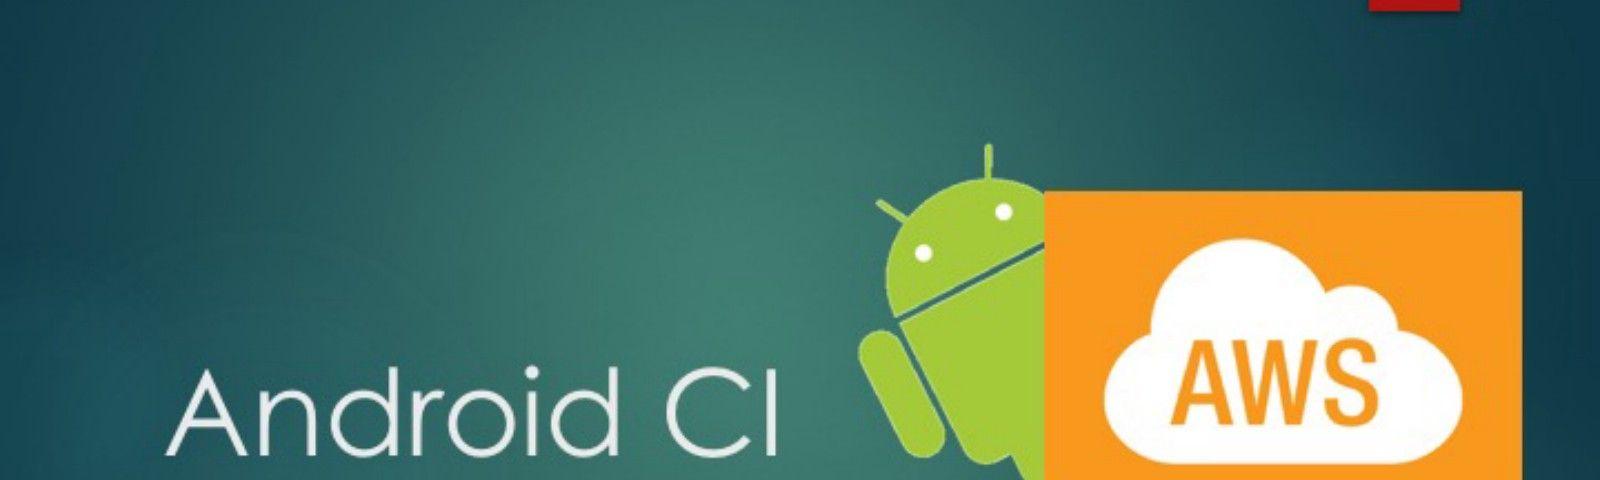 Gilt.com Logo - Android